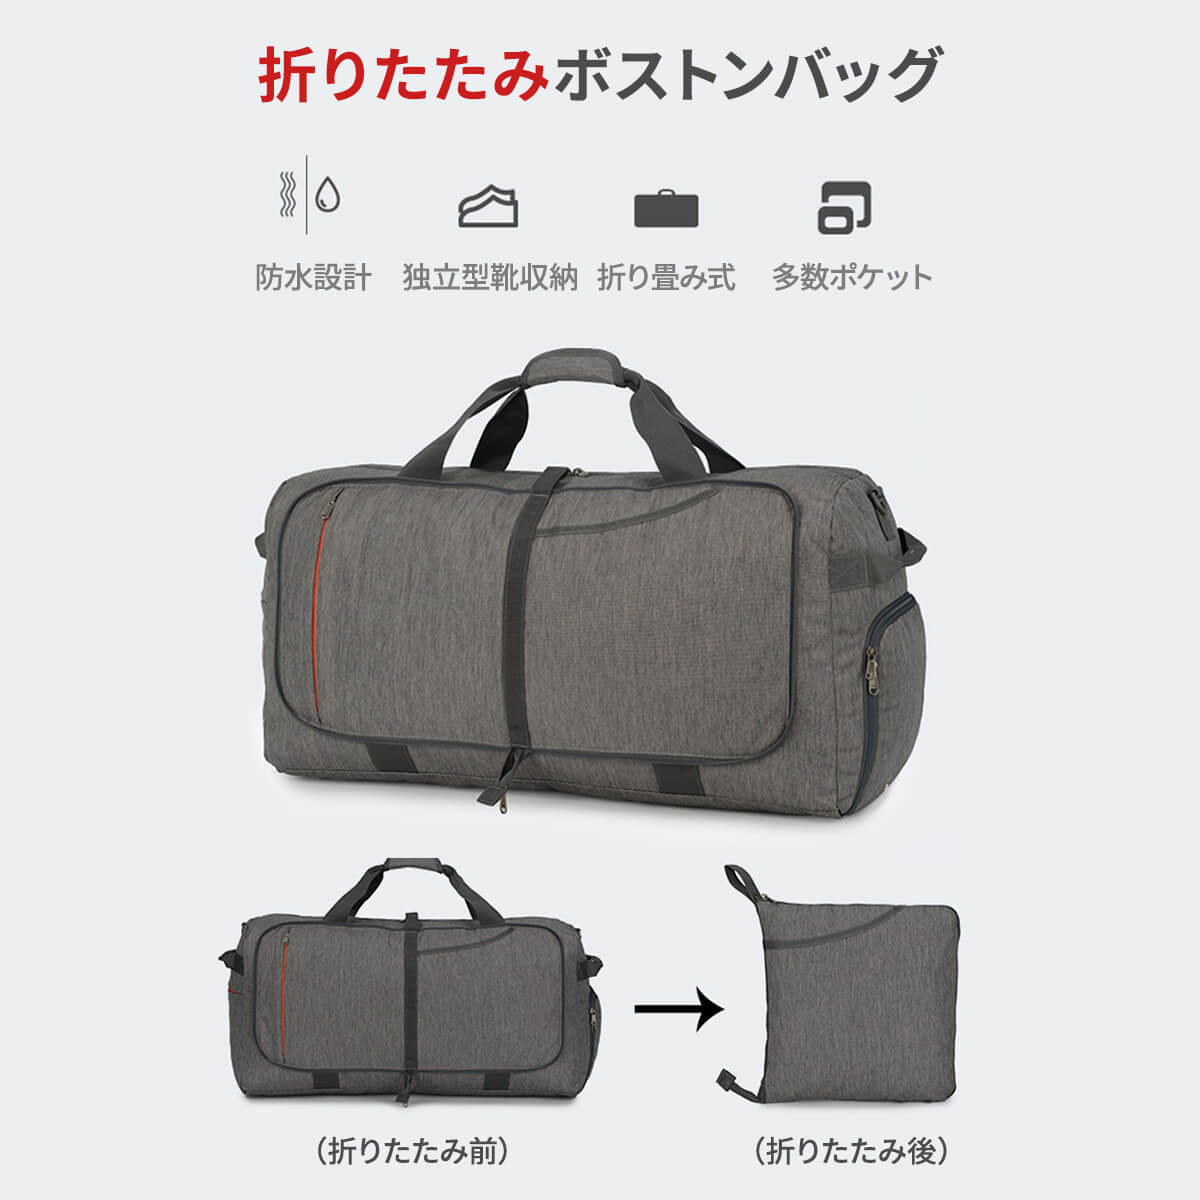 780円 人気特価 ボストンバッグ 薄いグレー バッグ 灰色 修学旅行 軽量 旅行 シューズ 収納鞄